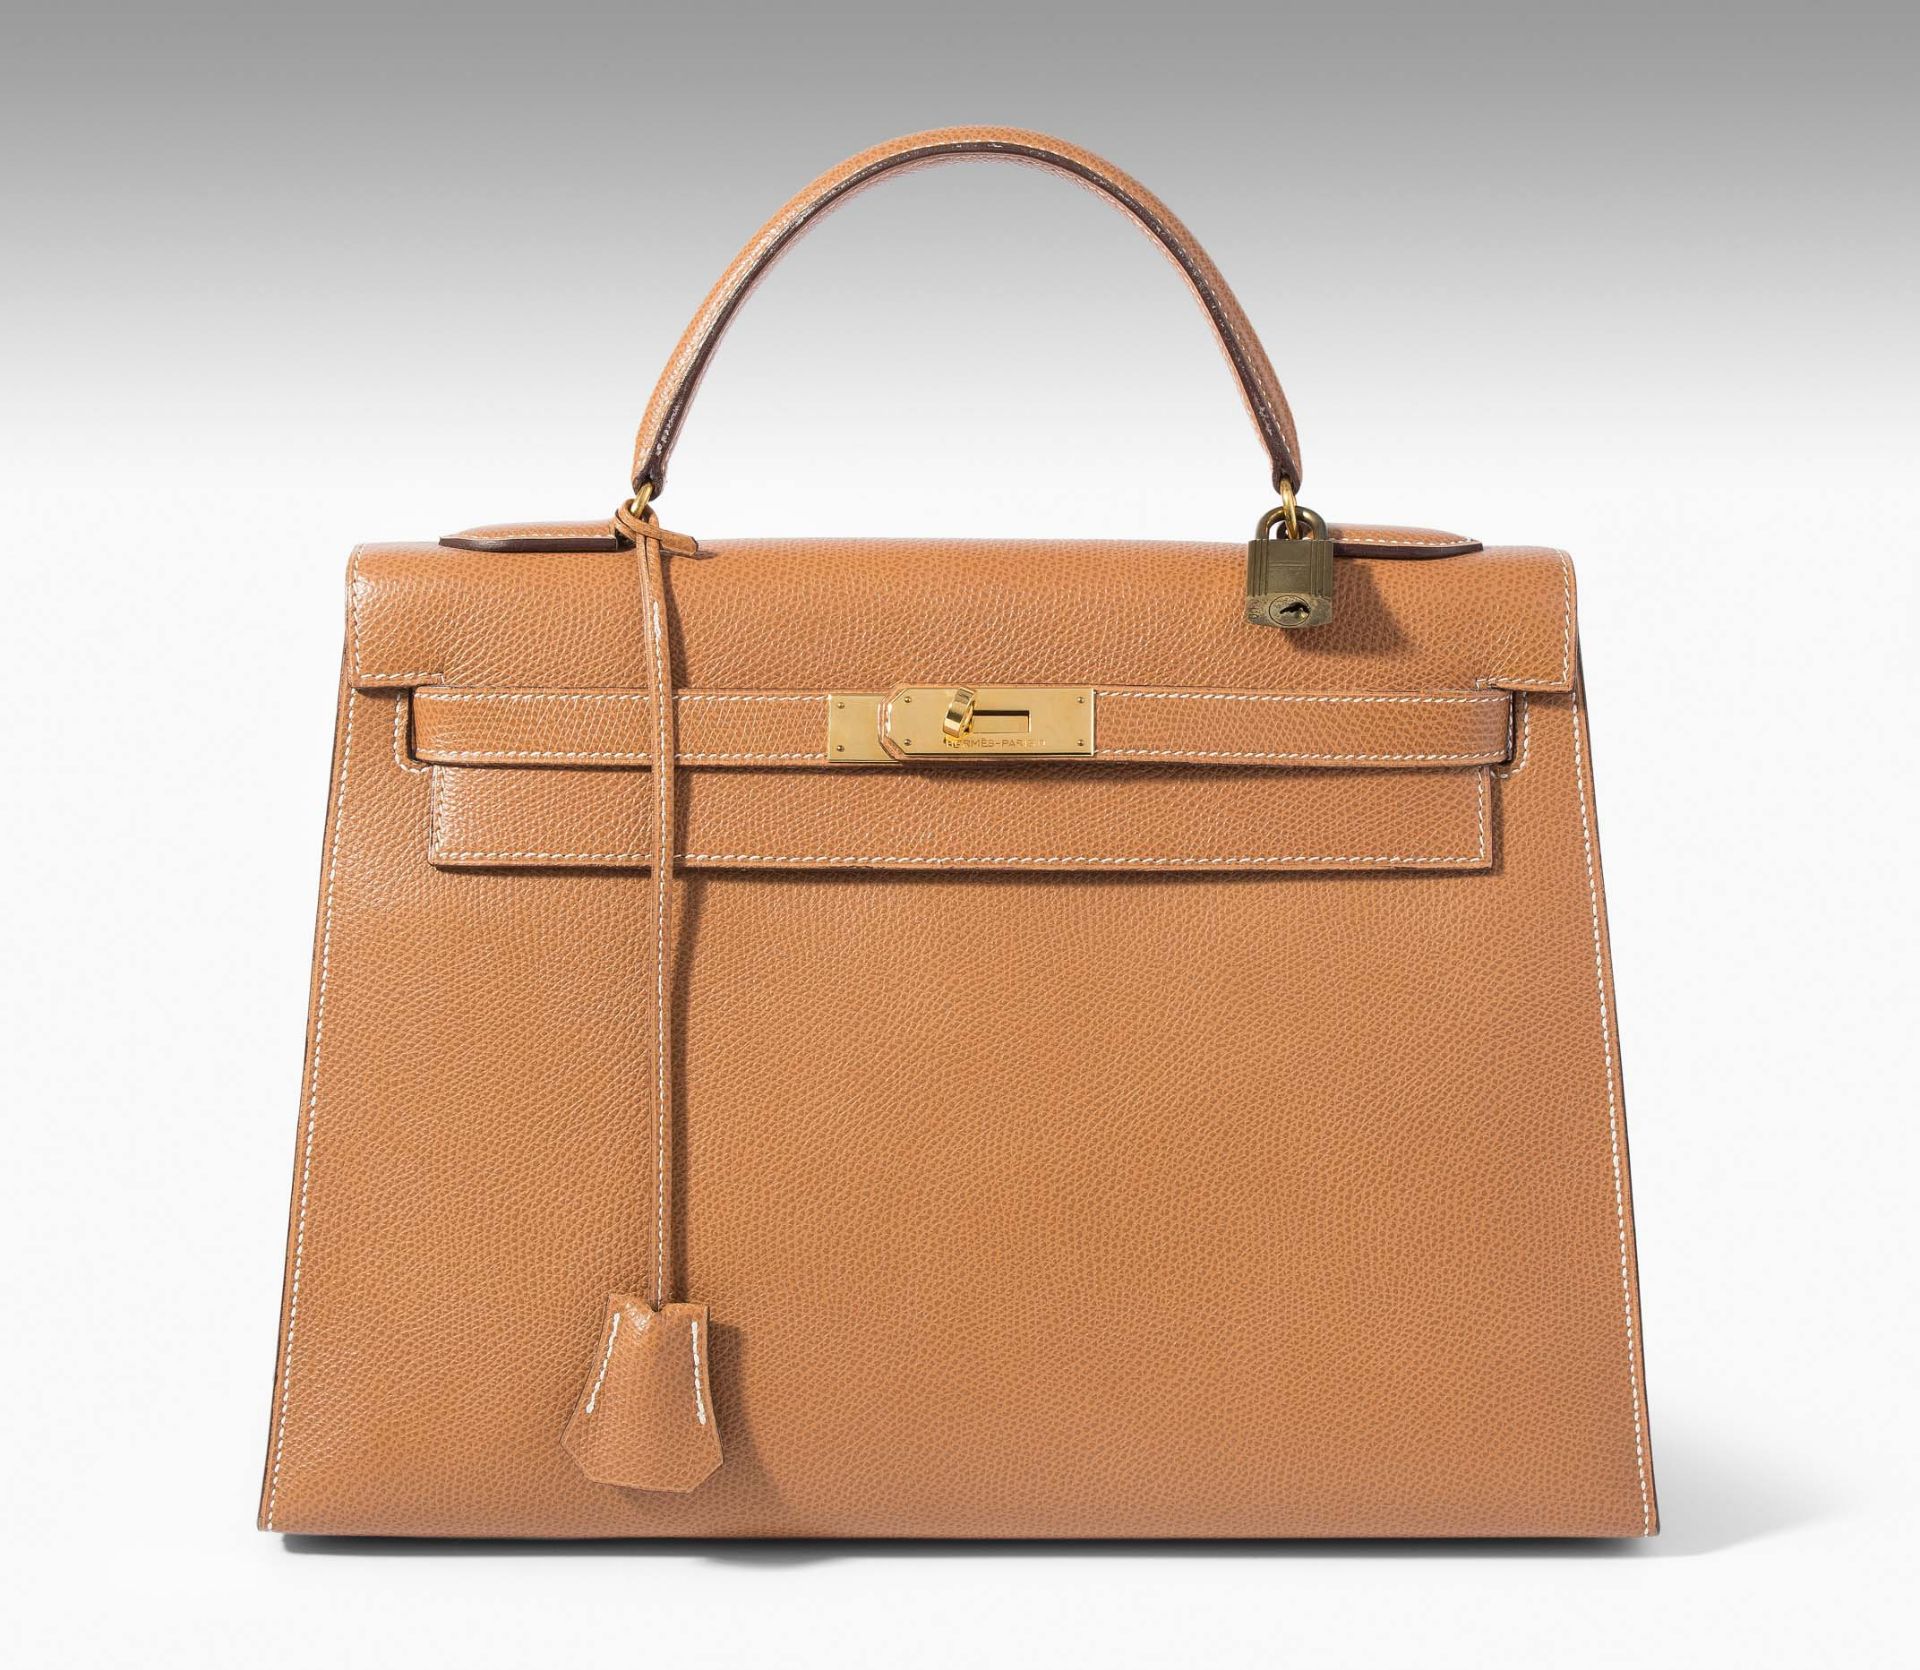 Hermès, Handtasche "Kelly sellier" 32 - Bild 2 aus 12